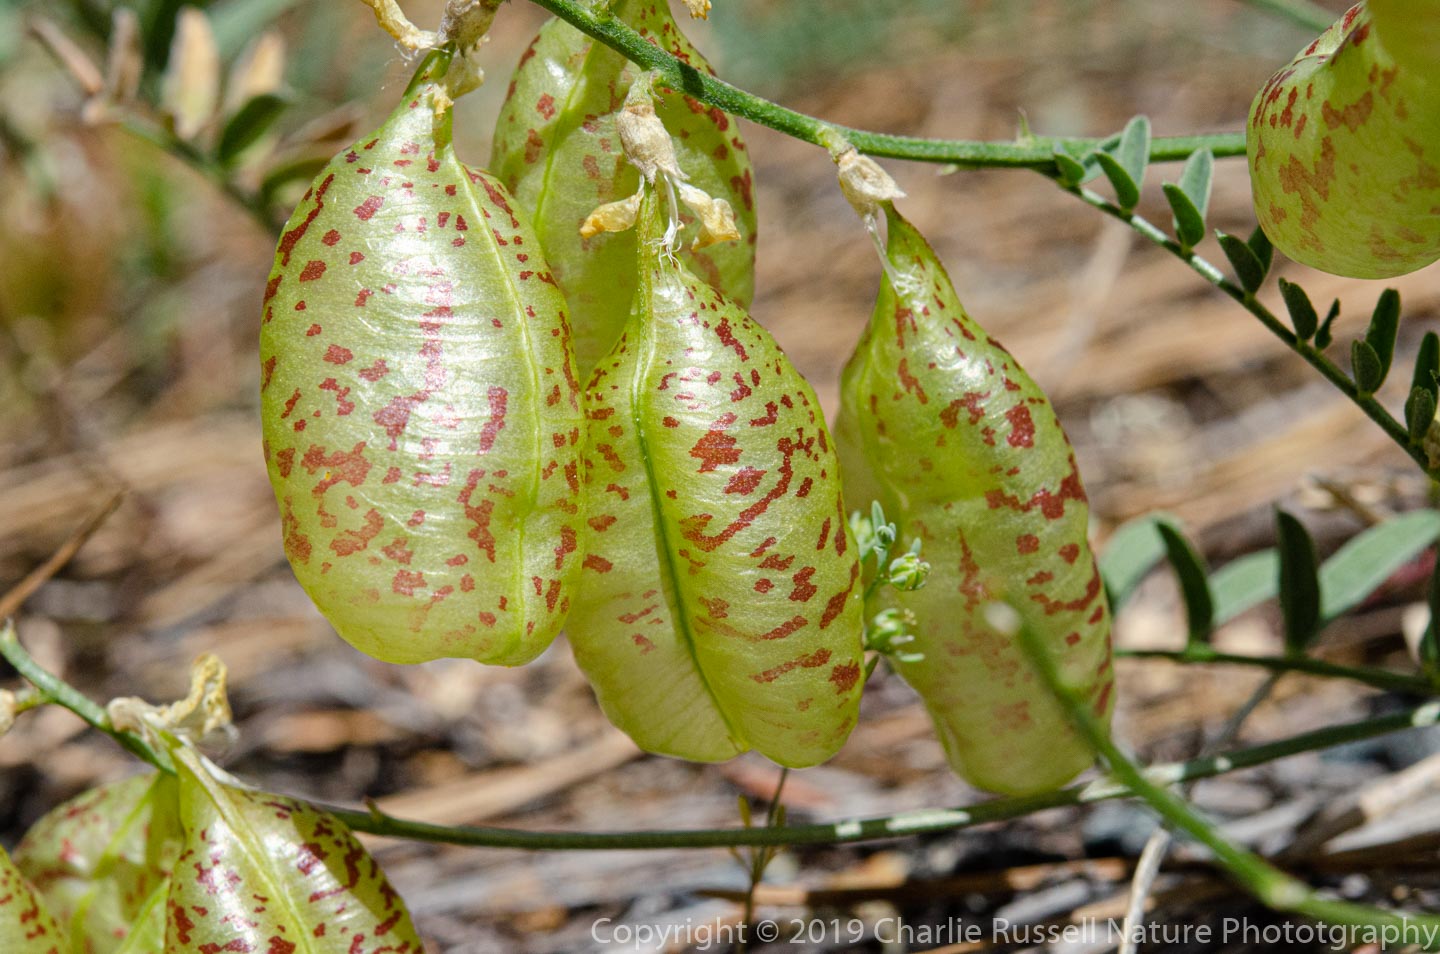 Siskiyou milkvetch, Astragalus whitneyi var. siskiyouensis